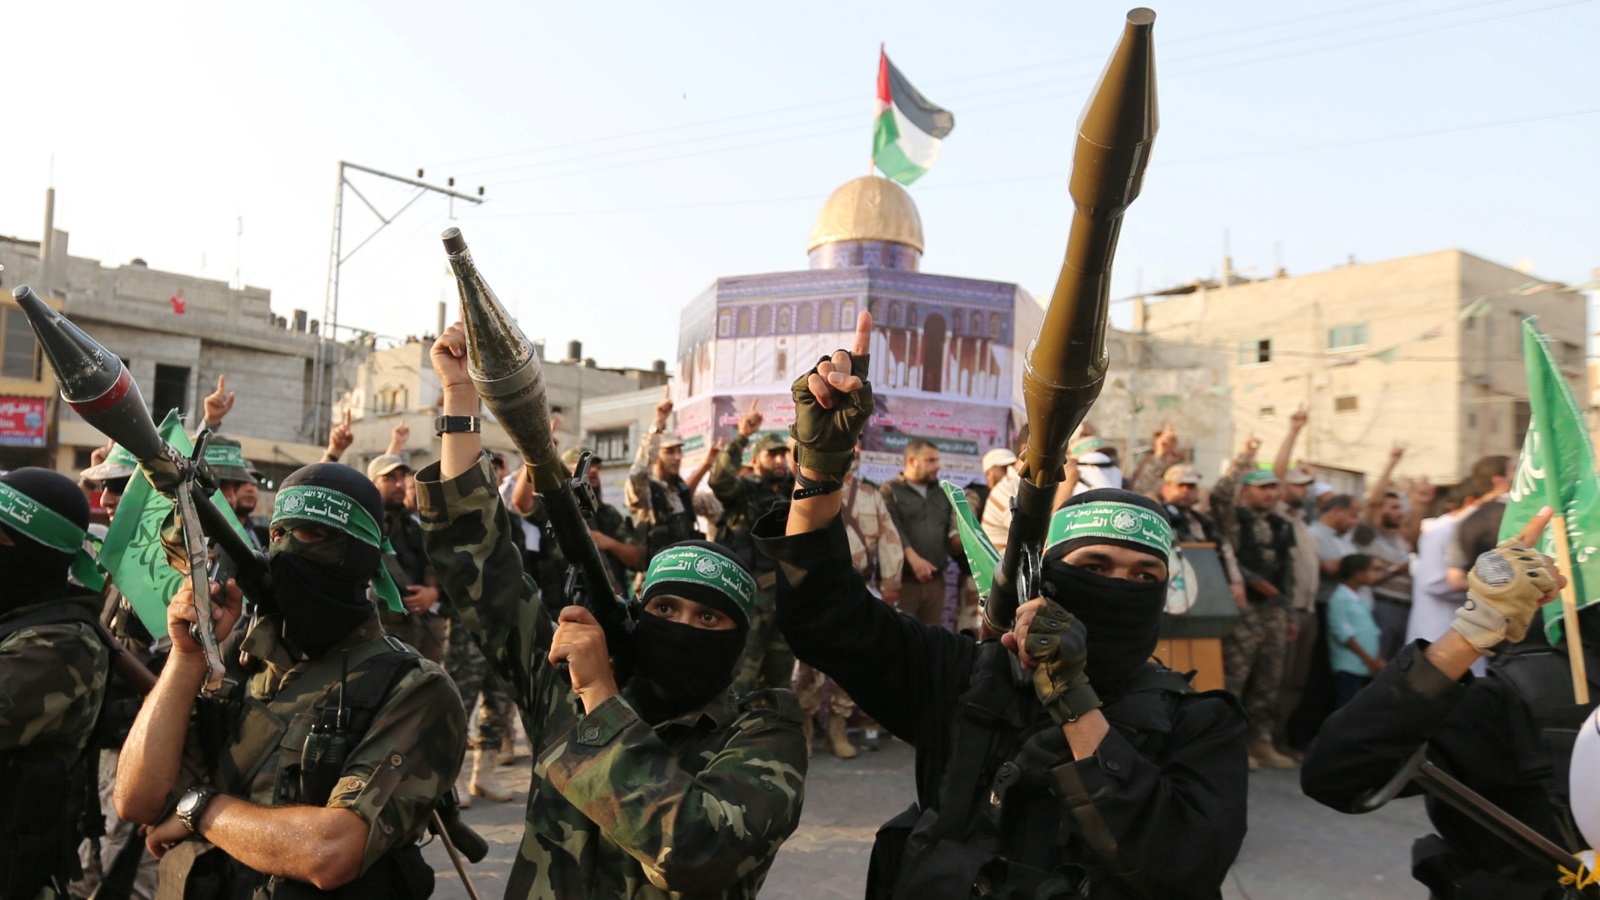 ما تطرحه حماس بأن الحركة اتجهت للمصالحة لأجل حماية مشروع المقاومة لا يجيب عن مخاوف الجميع بأن ما فائدة السلاح إذا كان القرار السياسي مؤيدٌ للمشاركة في حروب التسوية